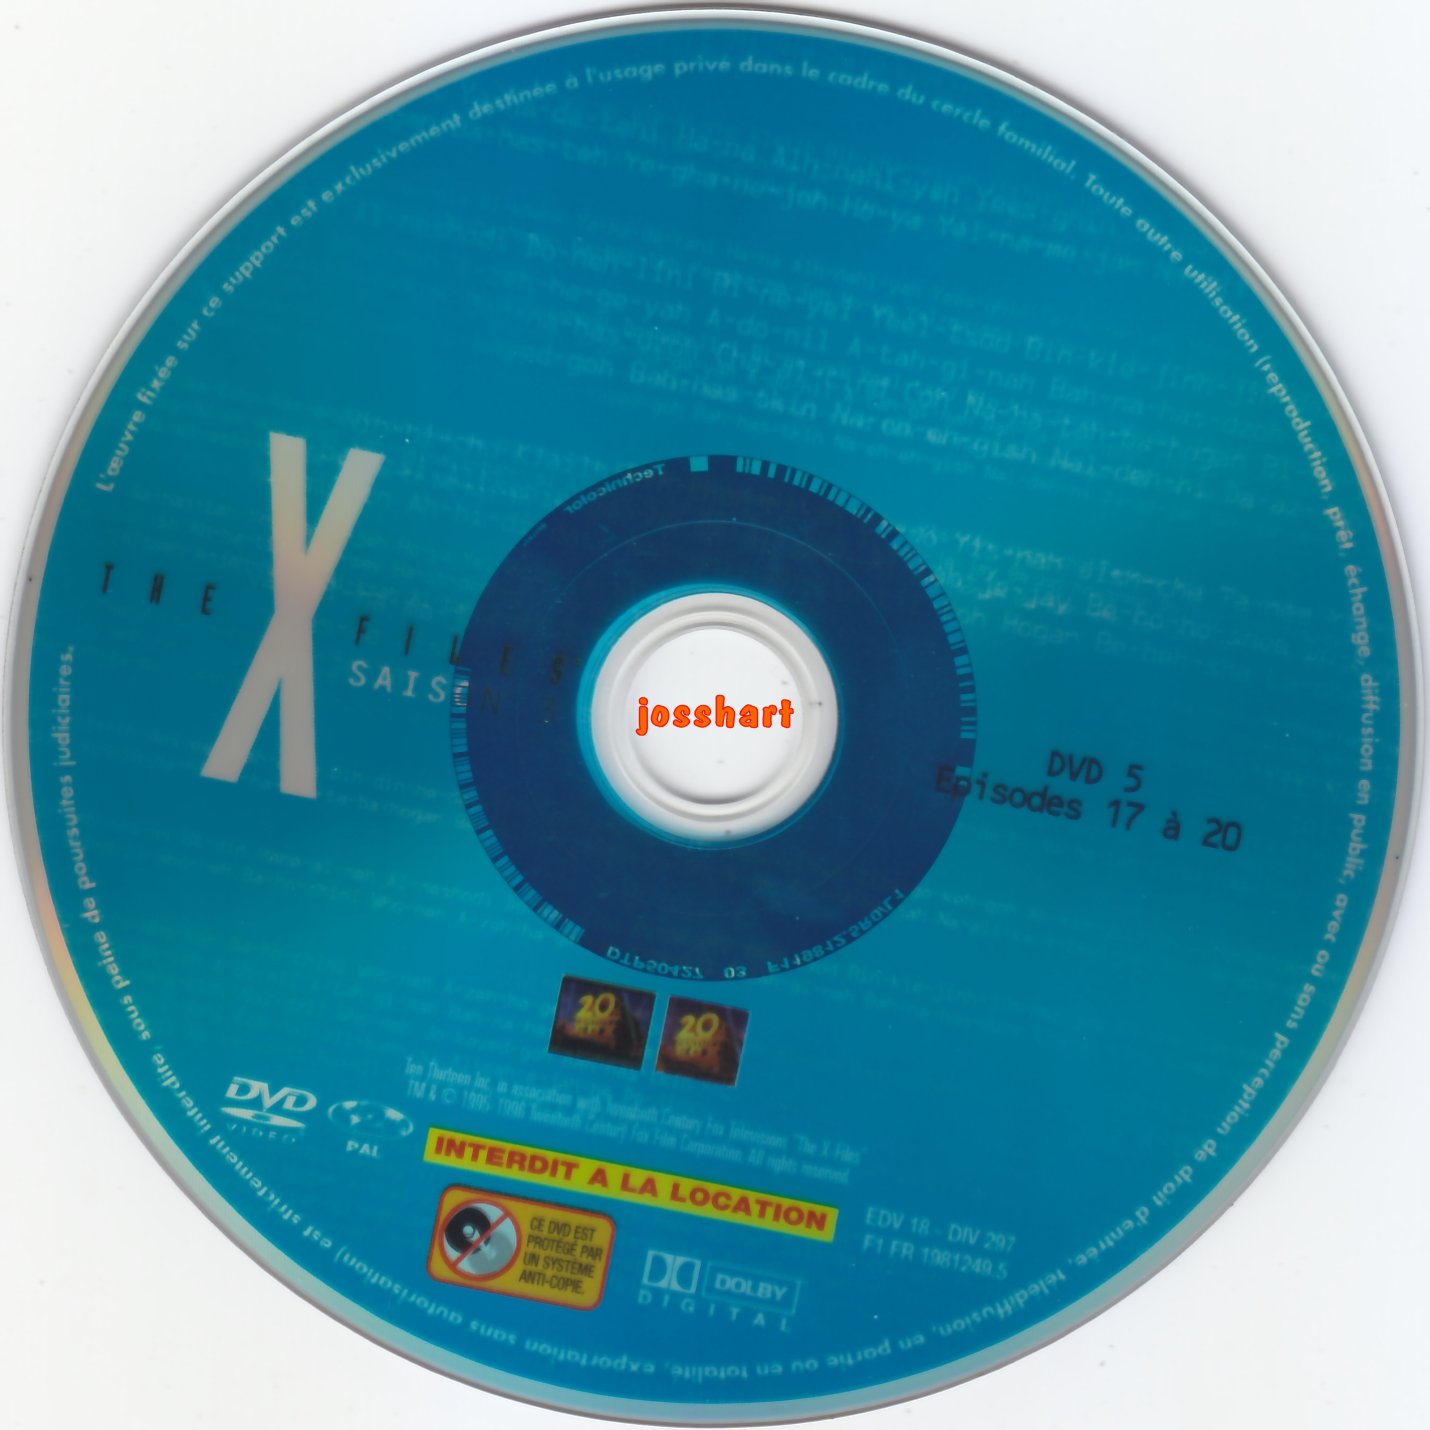 The X Files Saison 3 DVD 5 v2